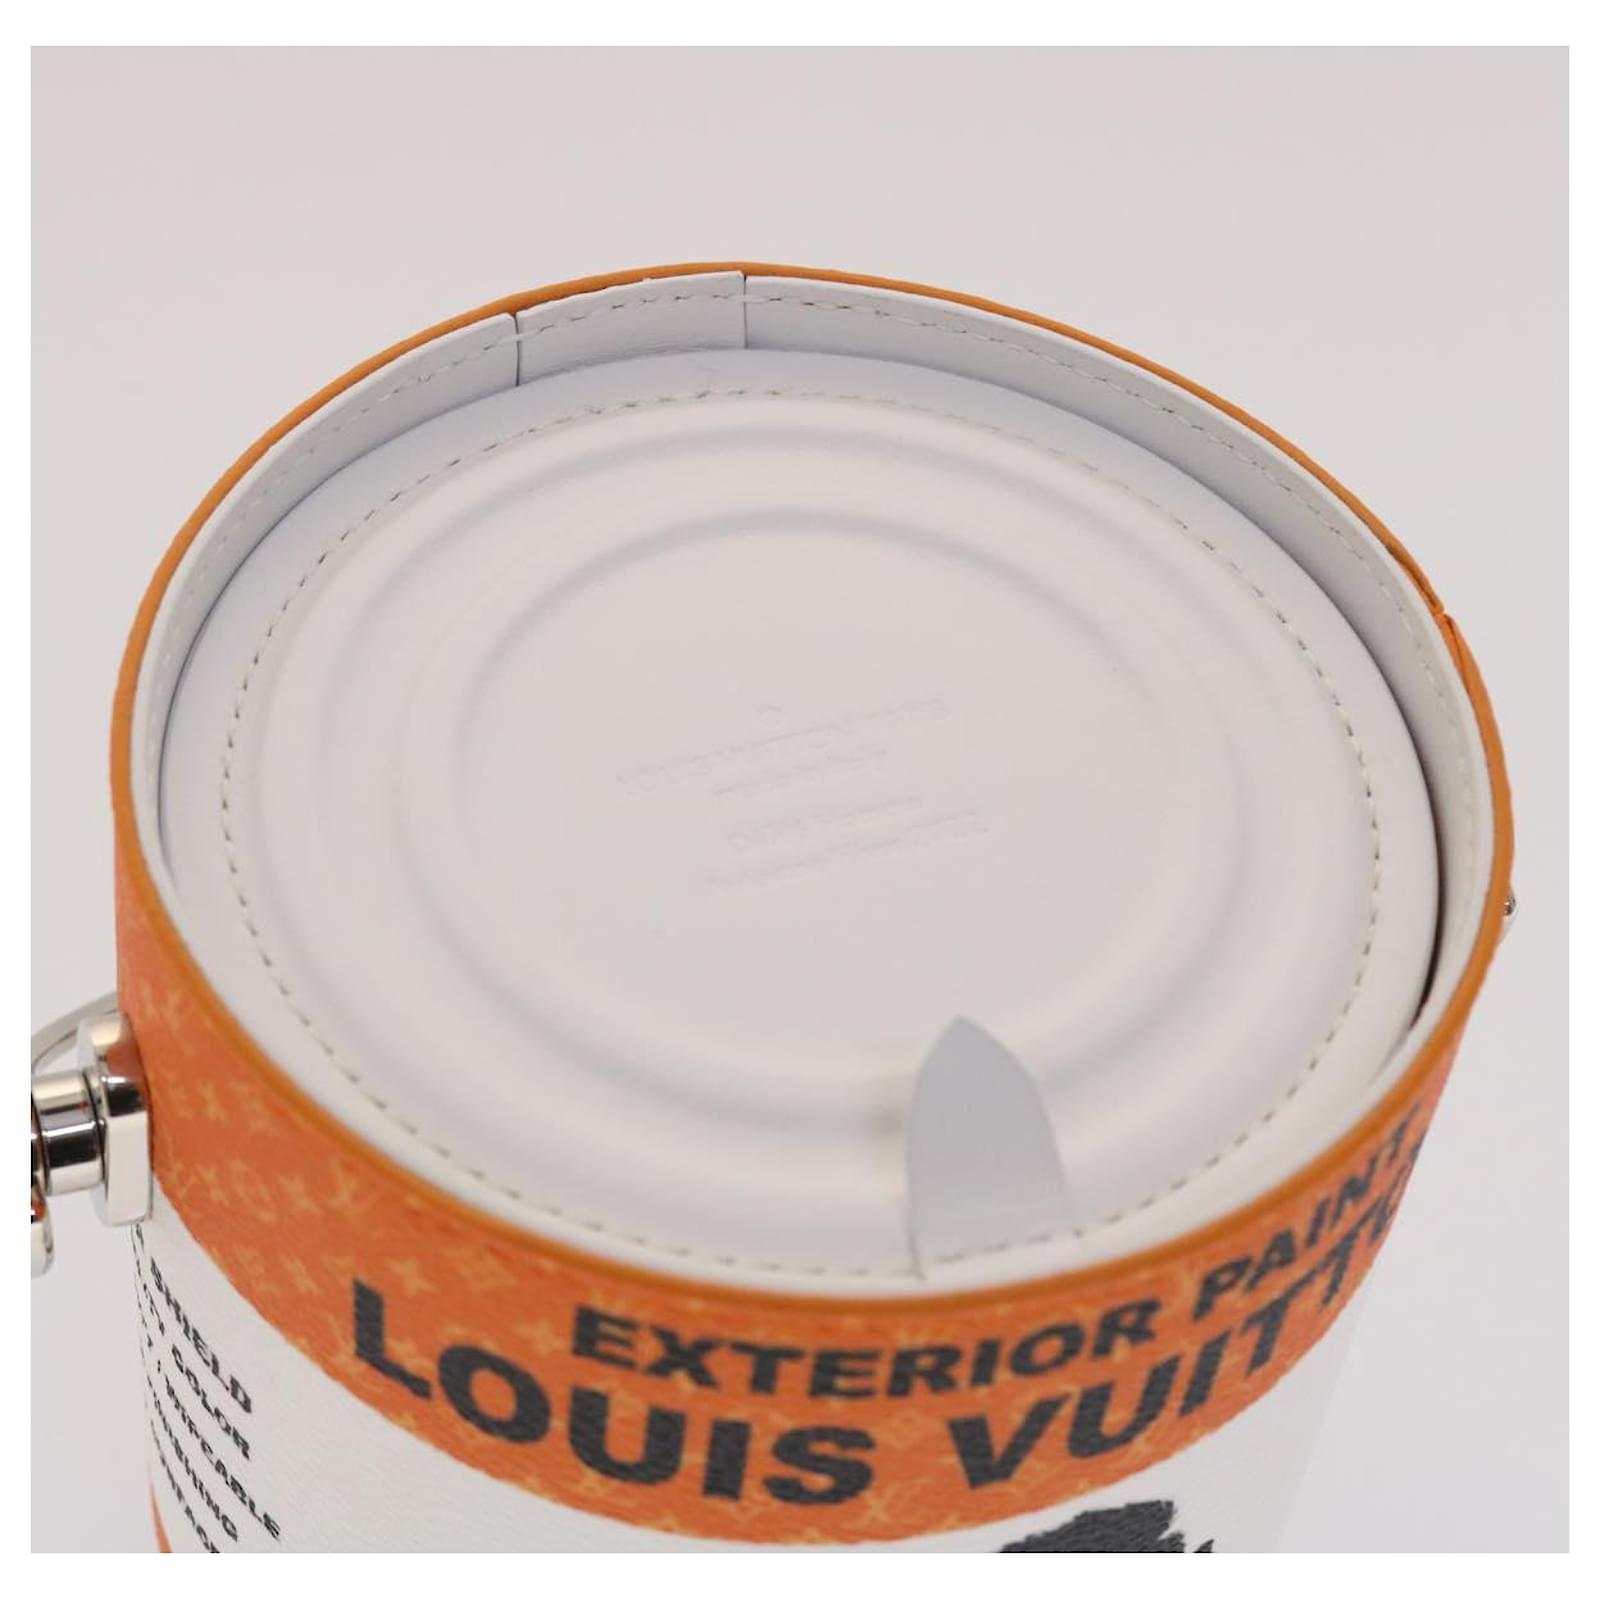 LOUIS VUITTON LV Painted Can Shoulder Bag PVC Leather Orange